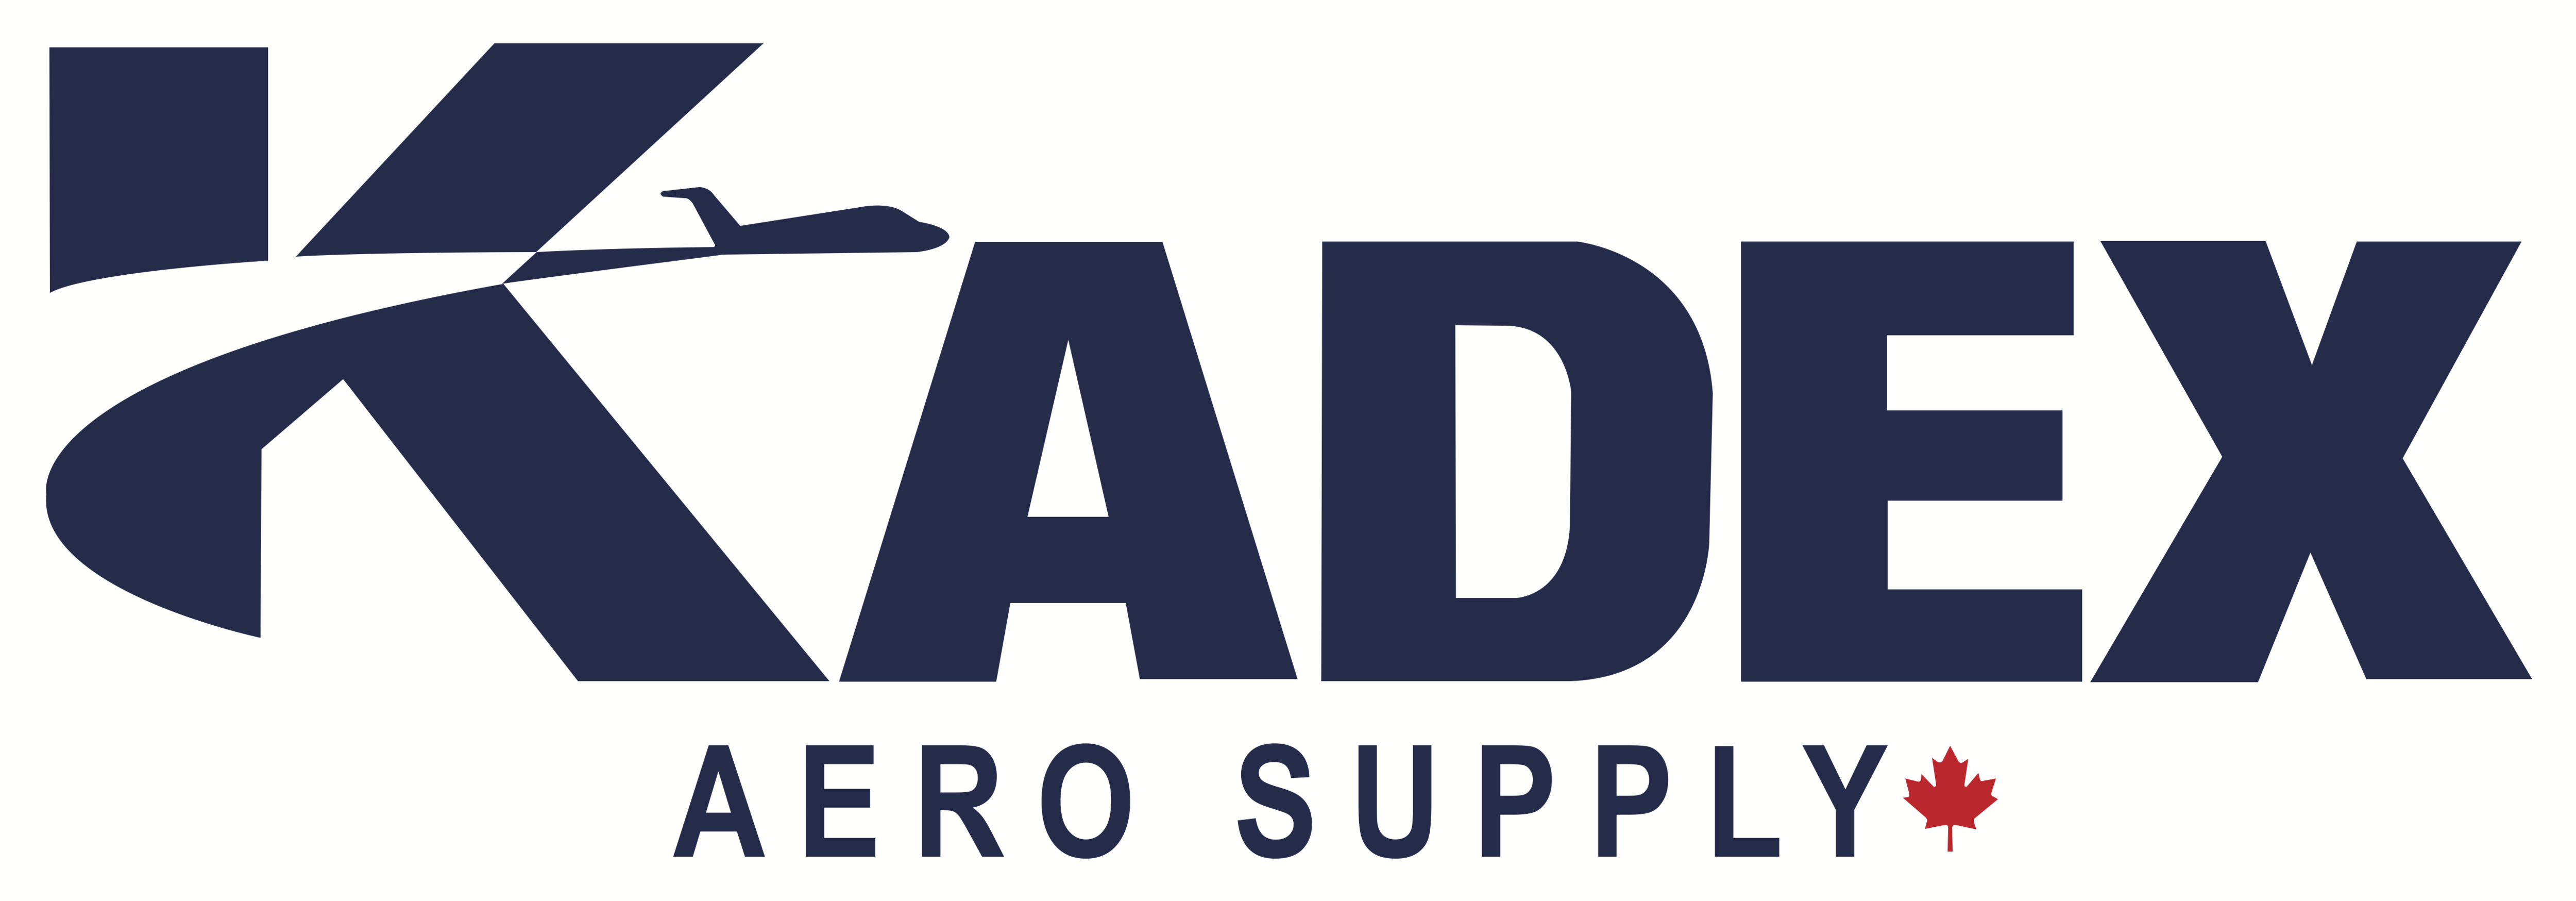 Kadex Aero Supply